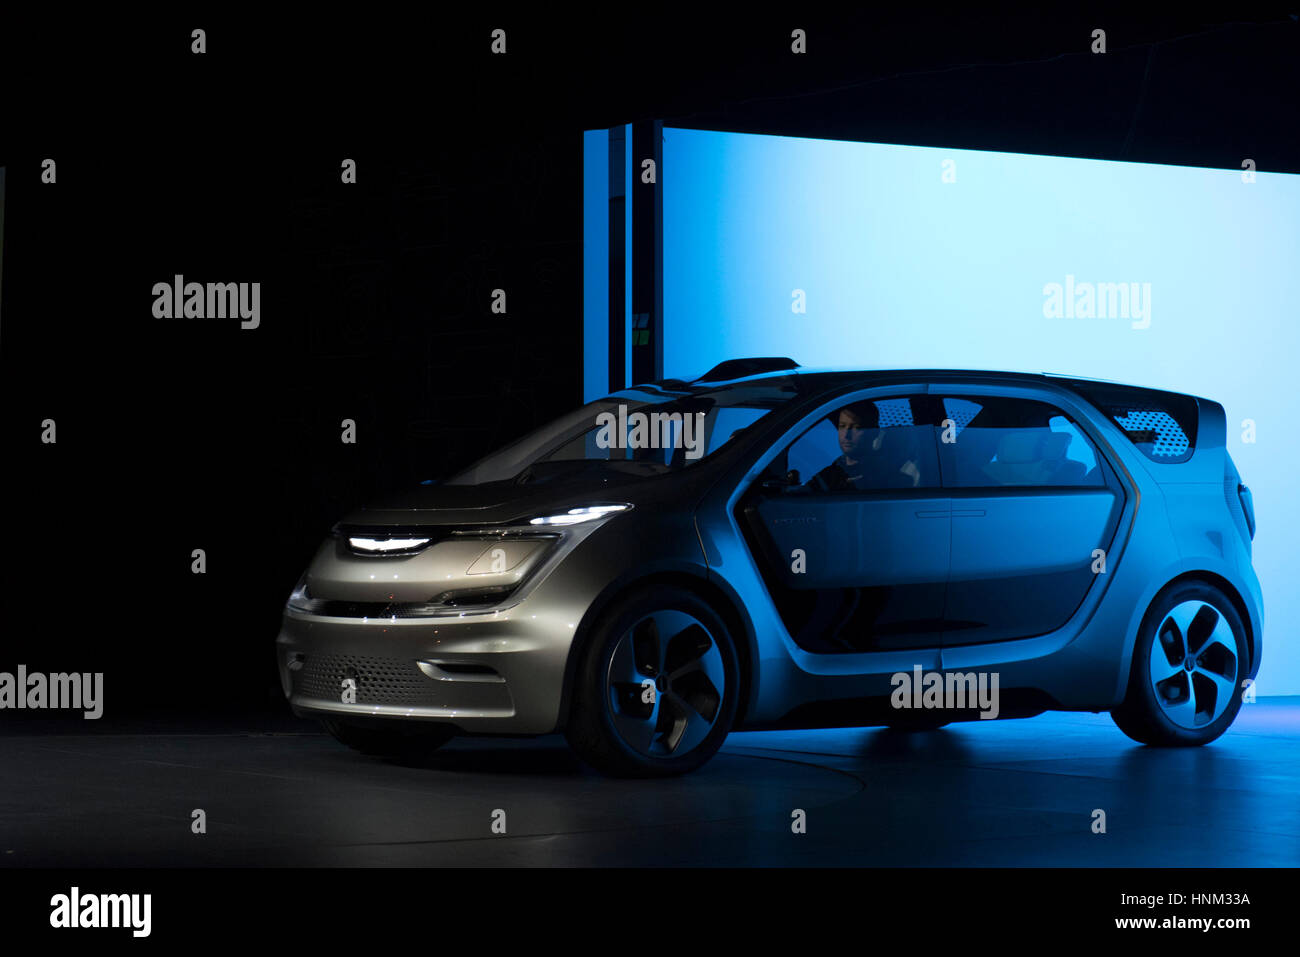 Le portail Chrysler concept car est illustré au cours d'une présentation à l'International Consumer Electronics Show (CES) à Las Vegas, Nevada. Banque D'Images